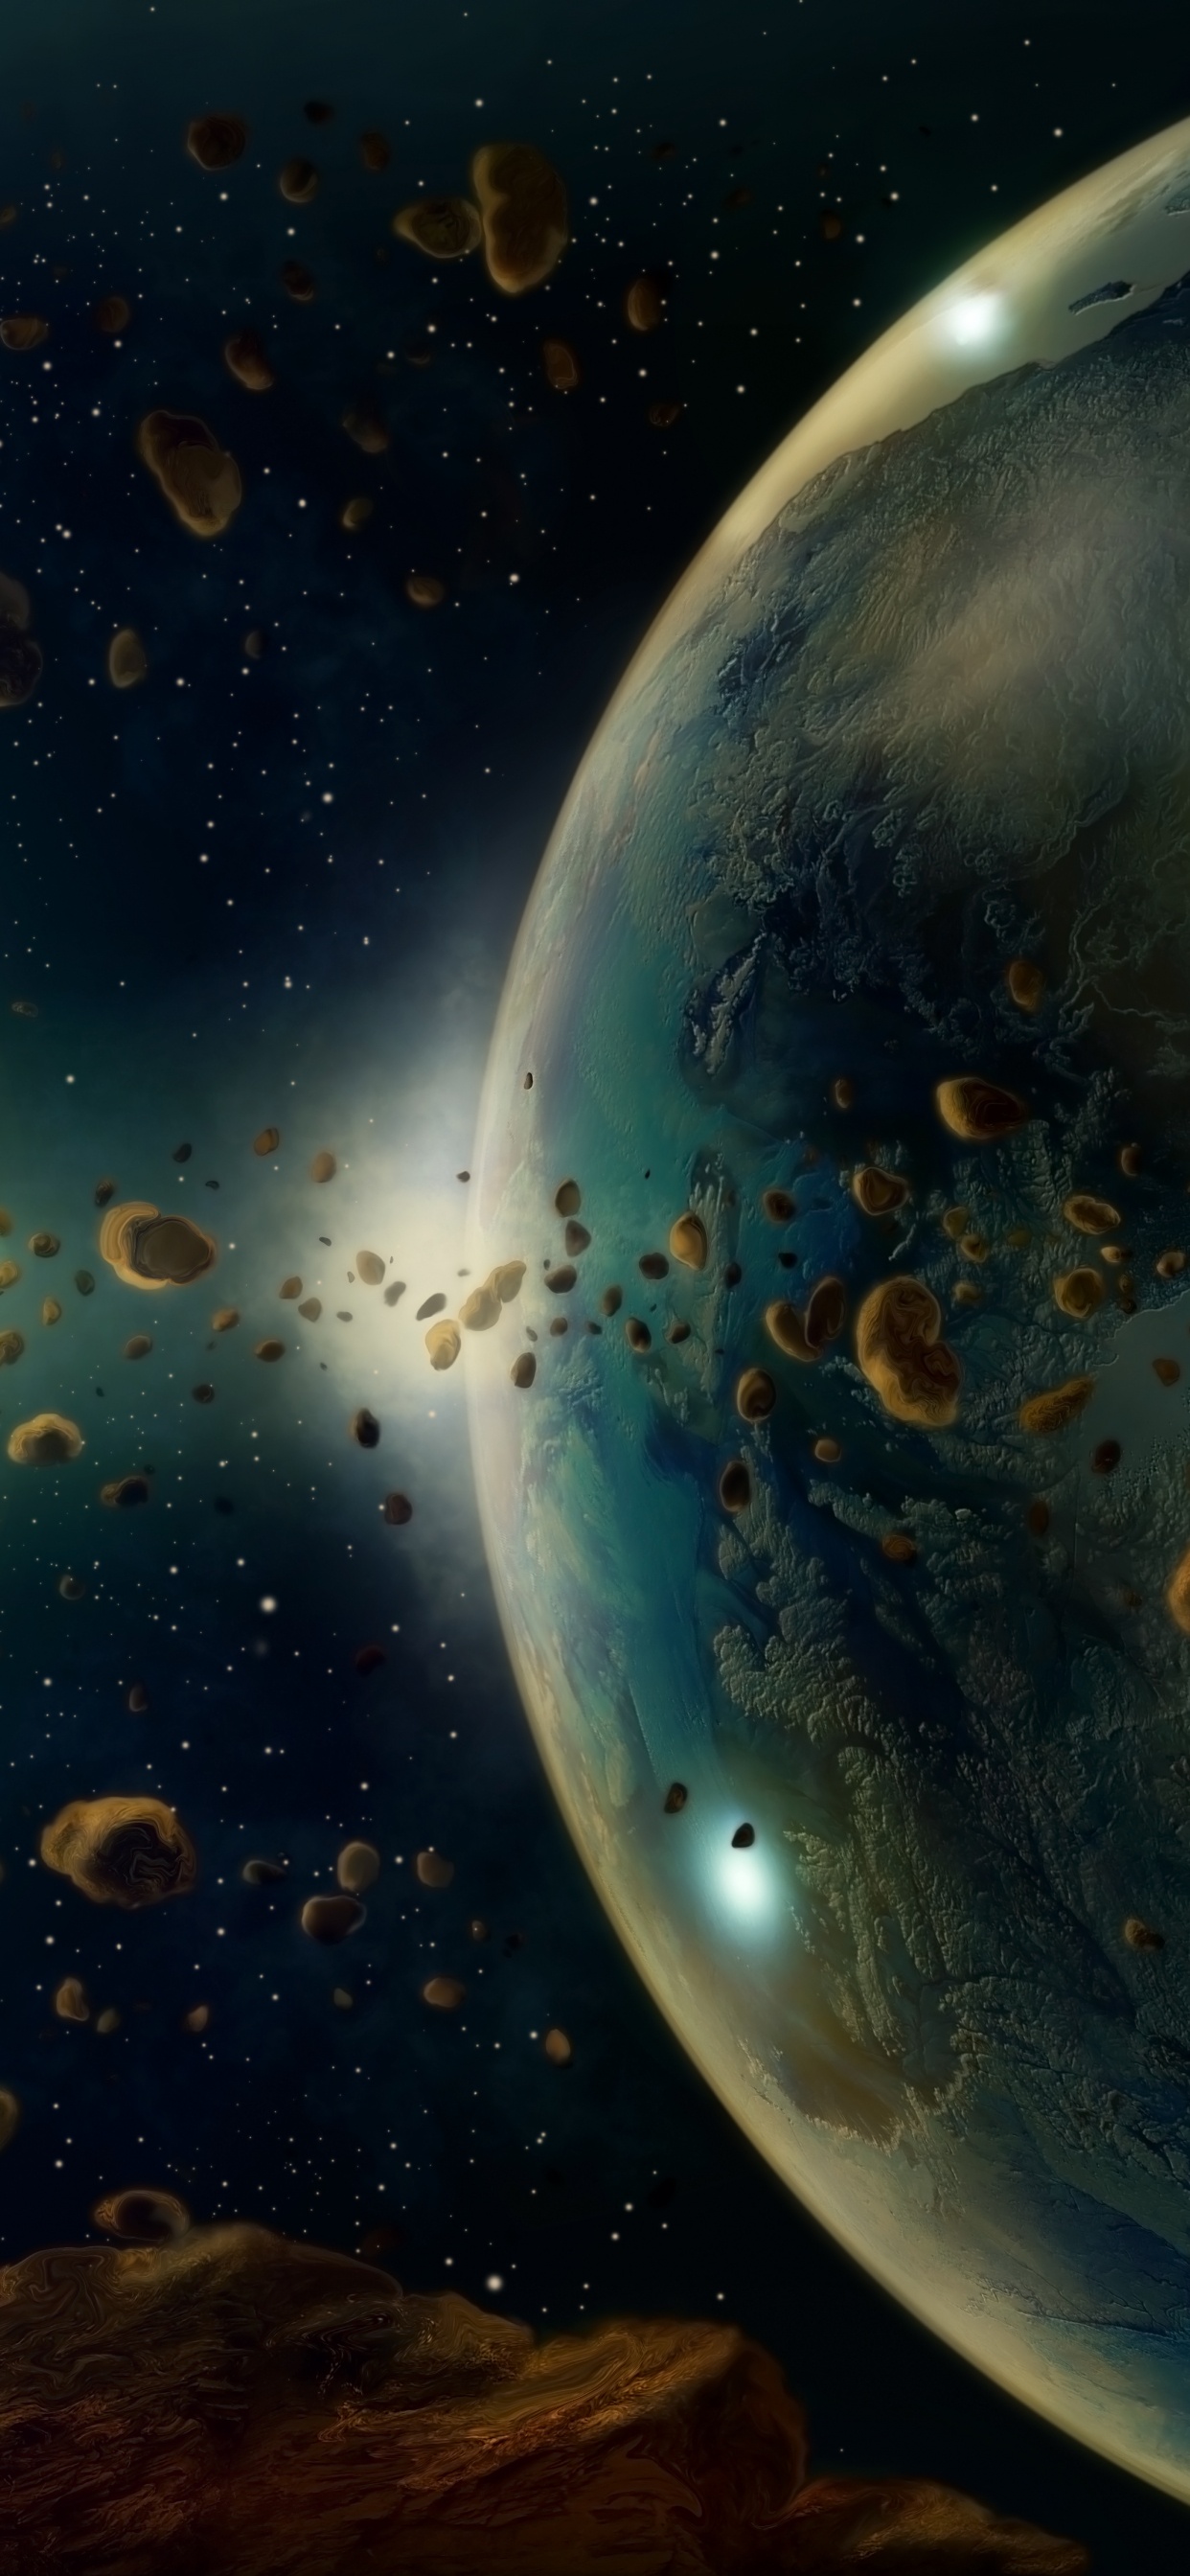 小行星, 这个星球, 外层空间, 天文学对象, 宇宙 壁纸 1242x2688 允许